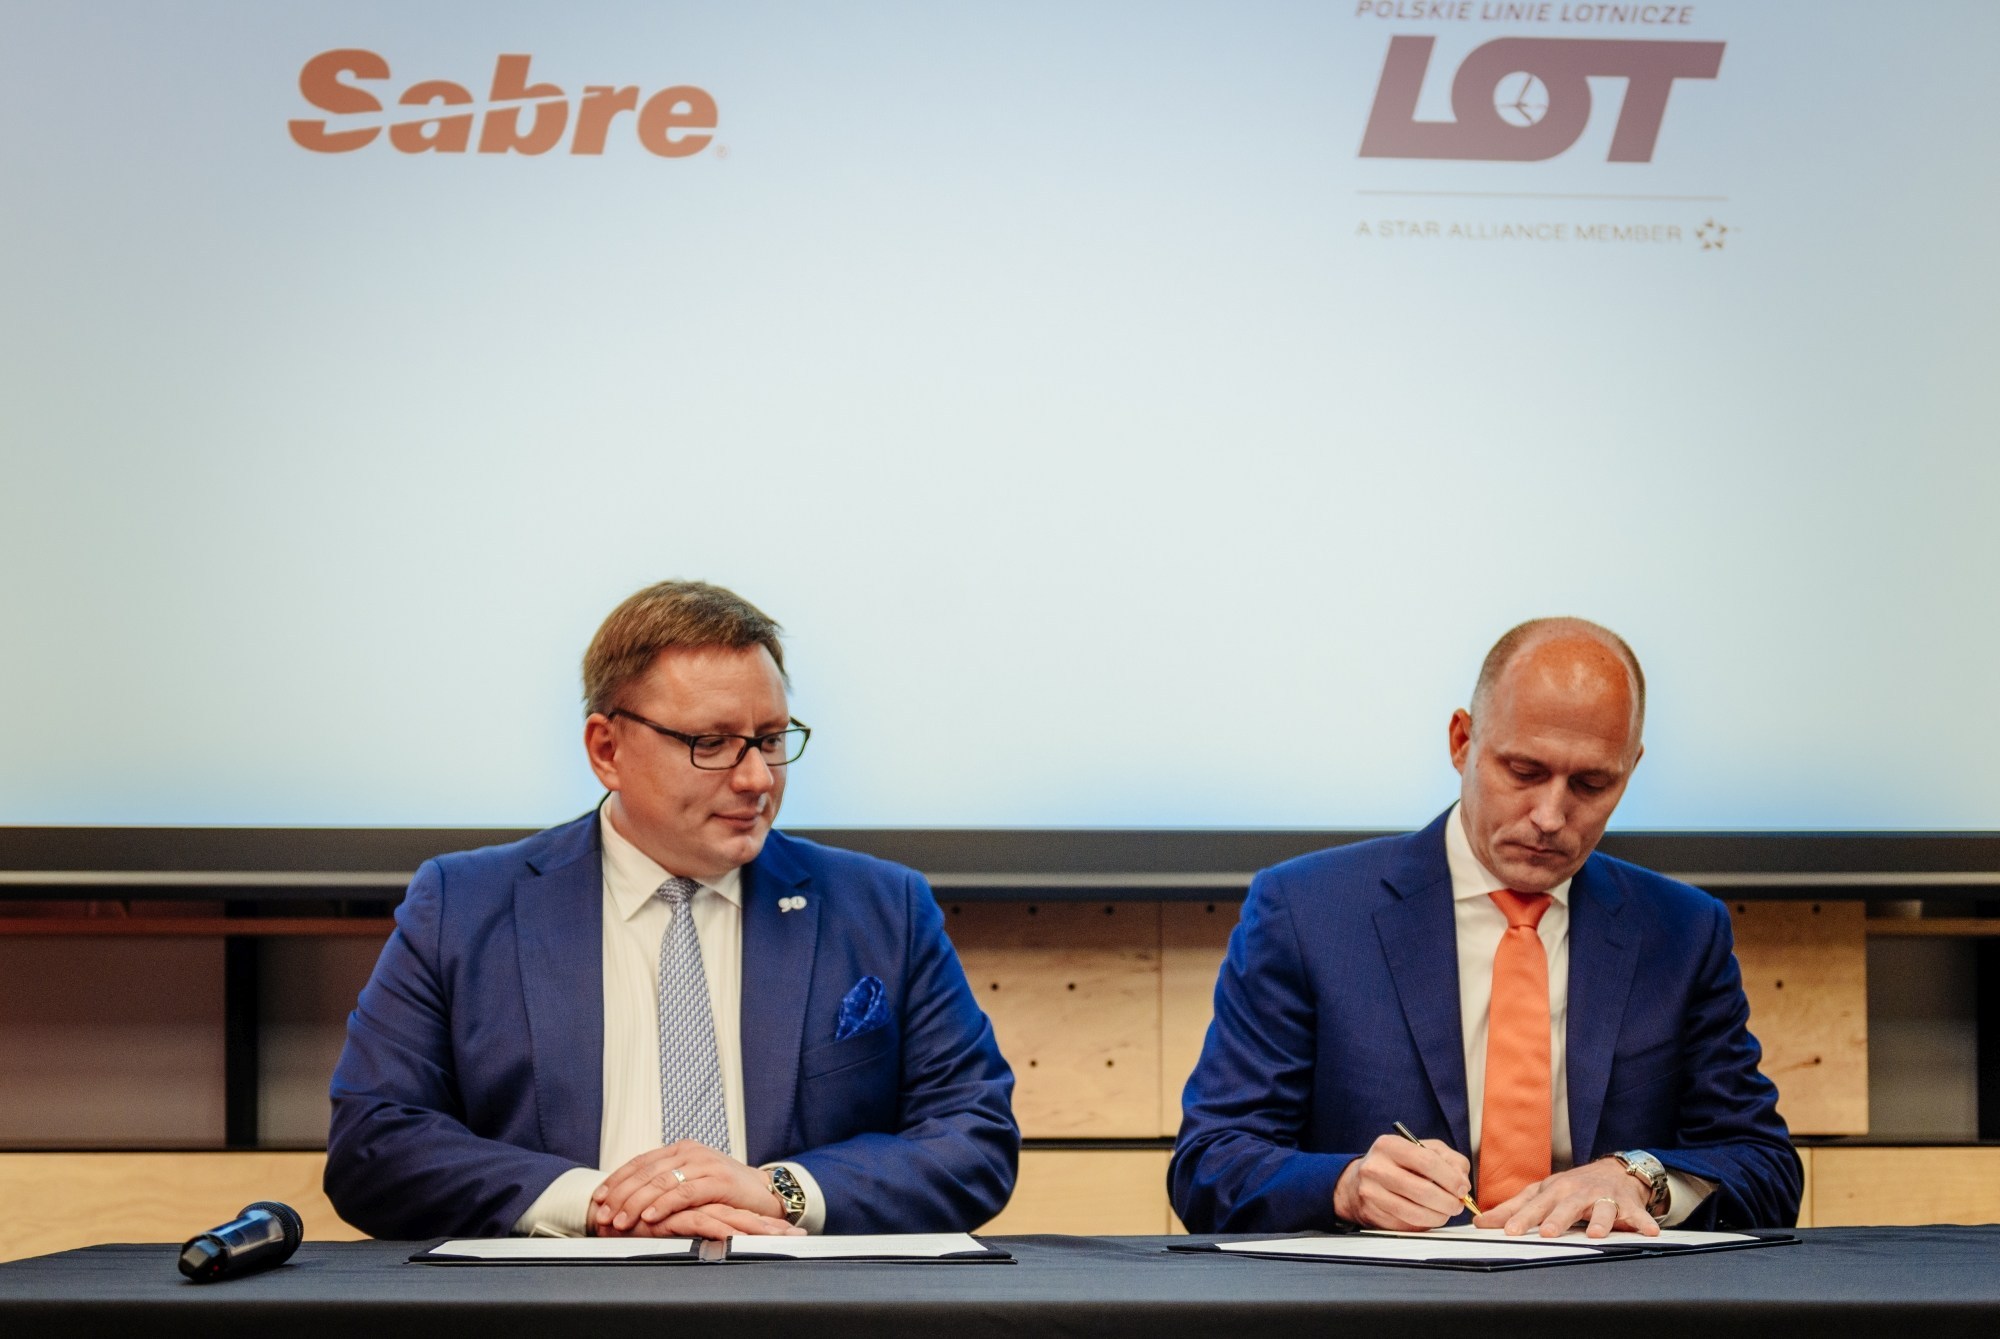 Î‘Ï€Î¿Ï„Î­Î»ÎµÏƒÎ¼Î± ÎµÎ¹ÎºÏŒÎ½Î±Ï‚ Î³Î¹Î± LOT Polish Airlines renews successful strategic partnership with Sabre